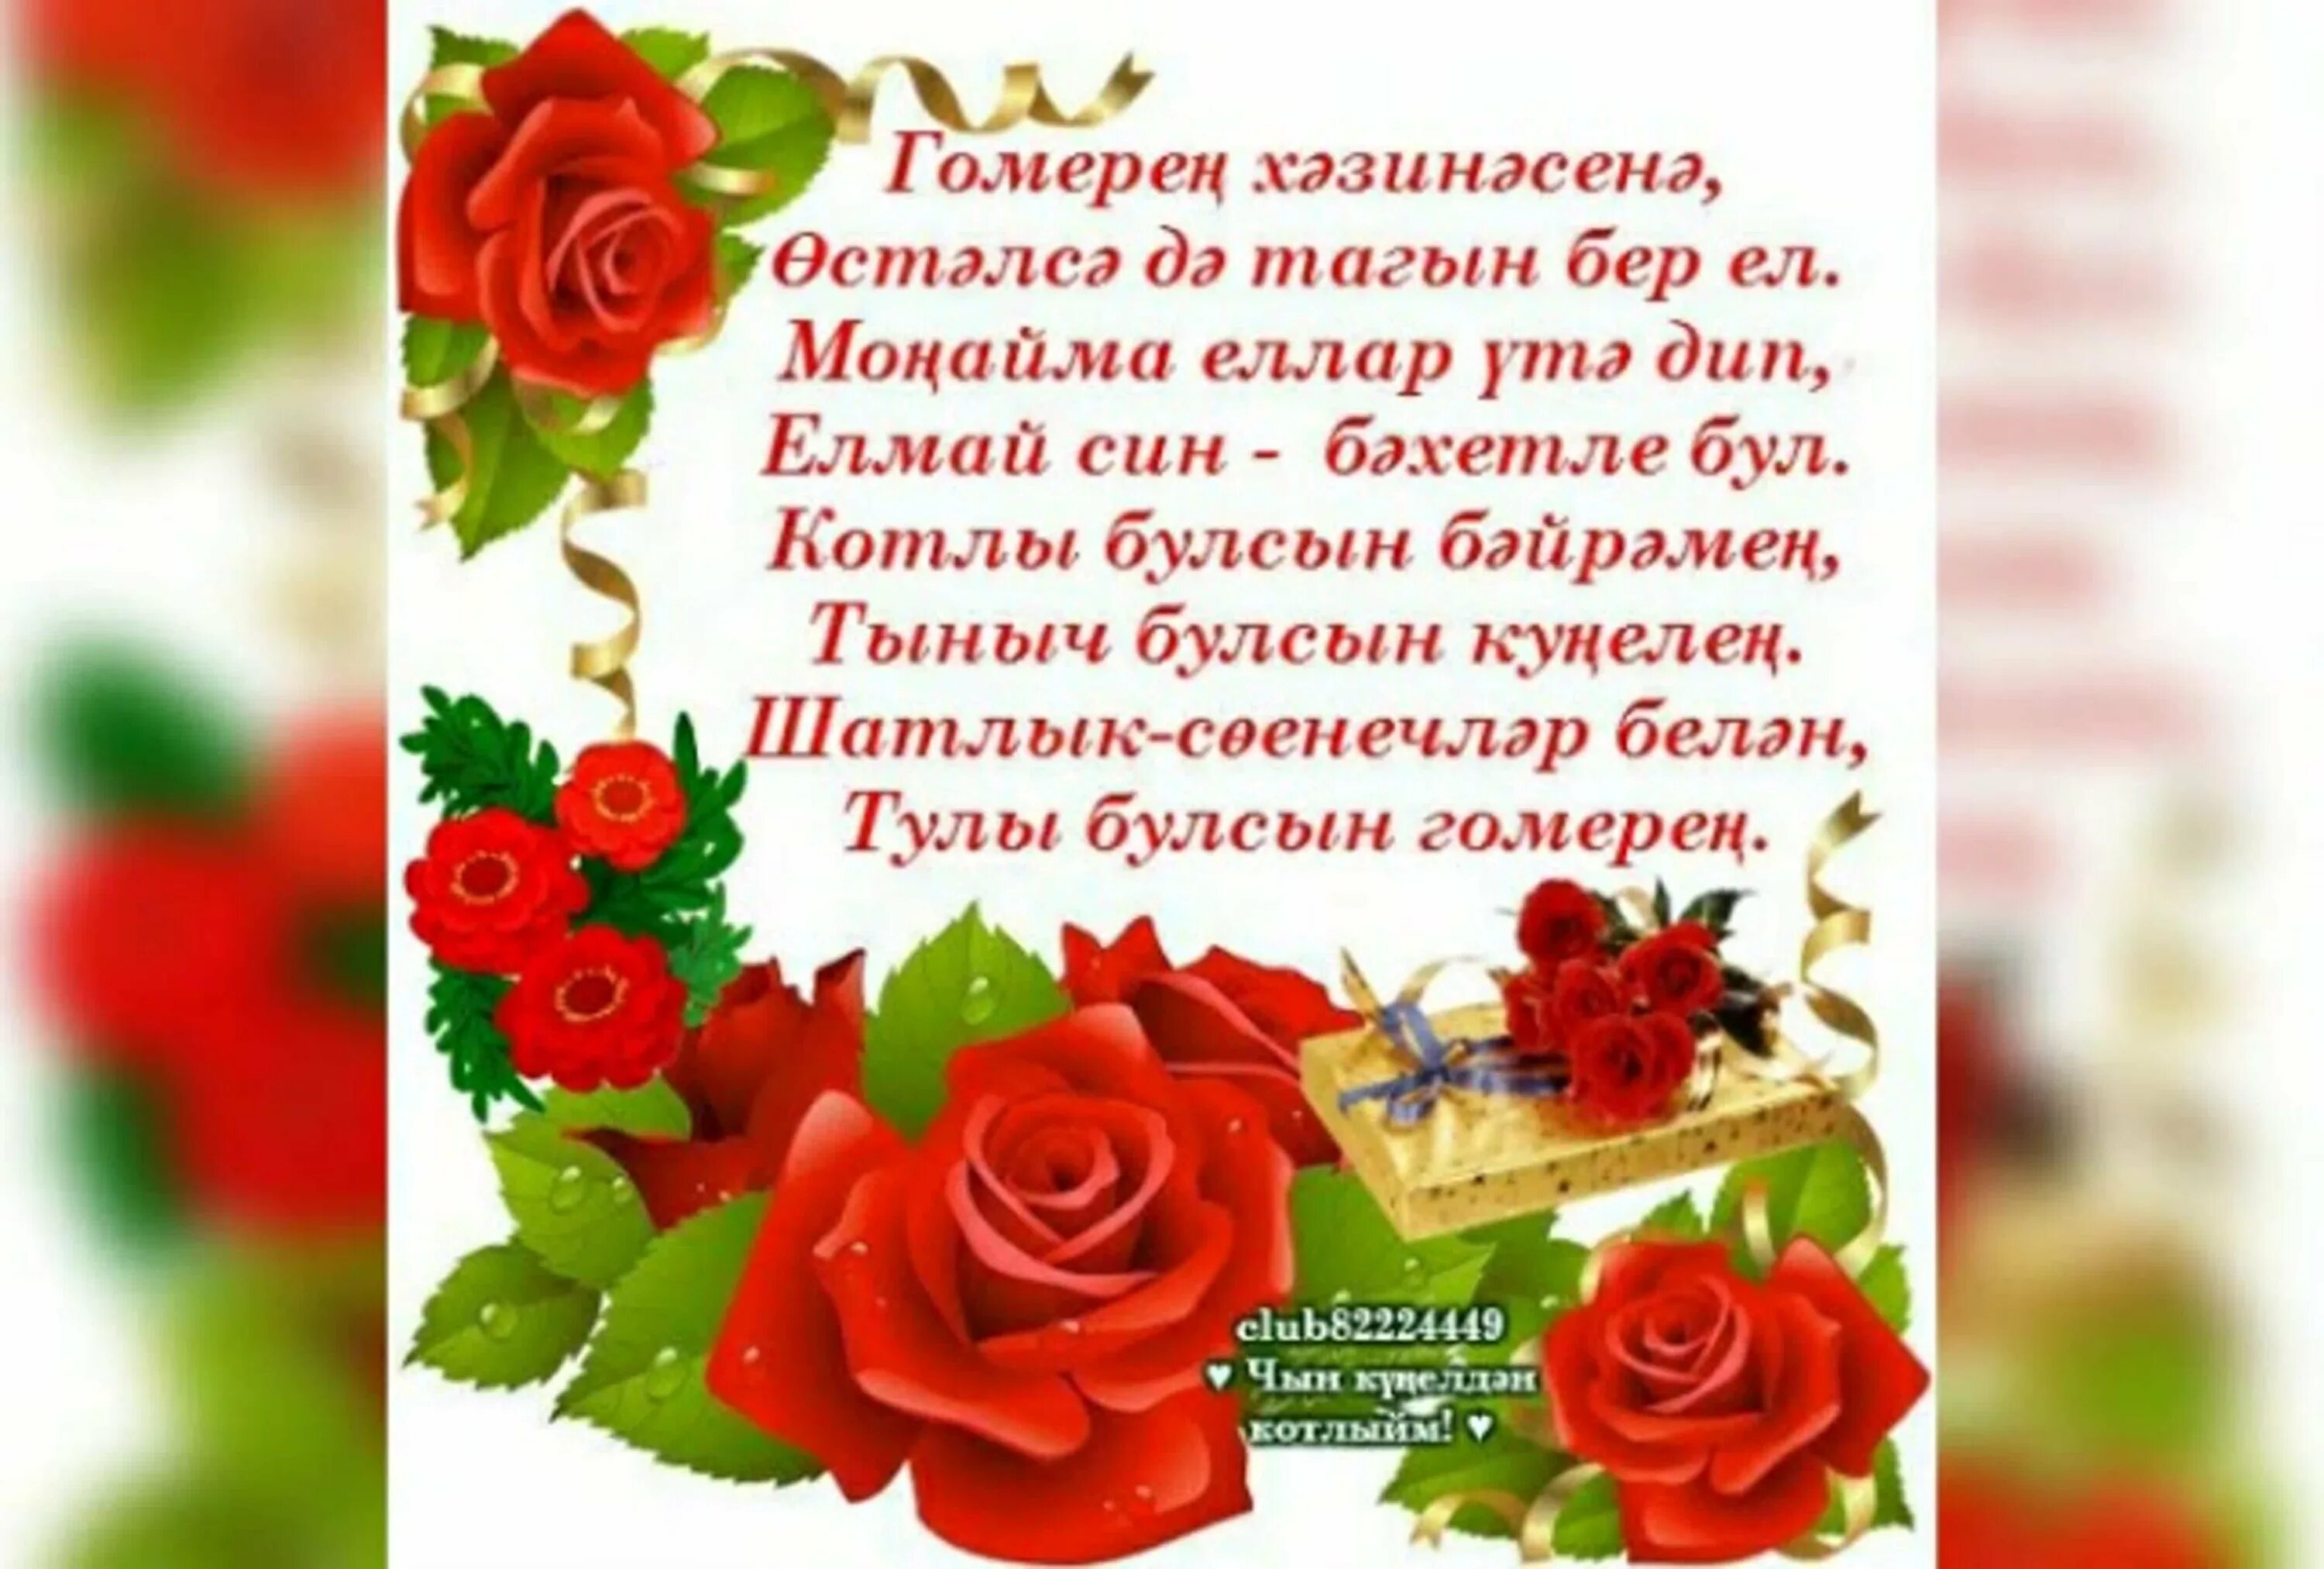 Туган конен белэн яшь кызга. Поздравления с днём рождения на татарском языке. Поздравление на татарском языке. Татарские поздравления с днем рождения. Поздравления с днём рождения женщине на татарском языке.